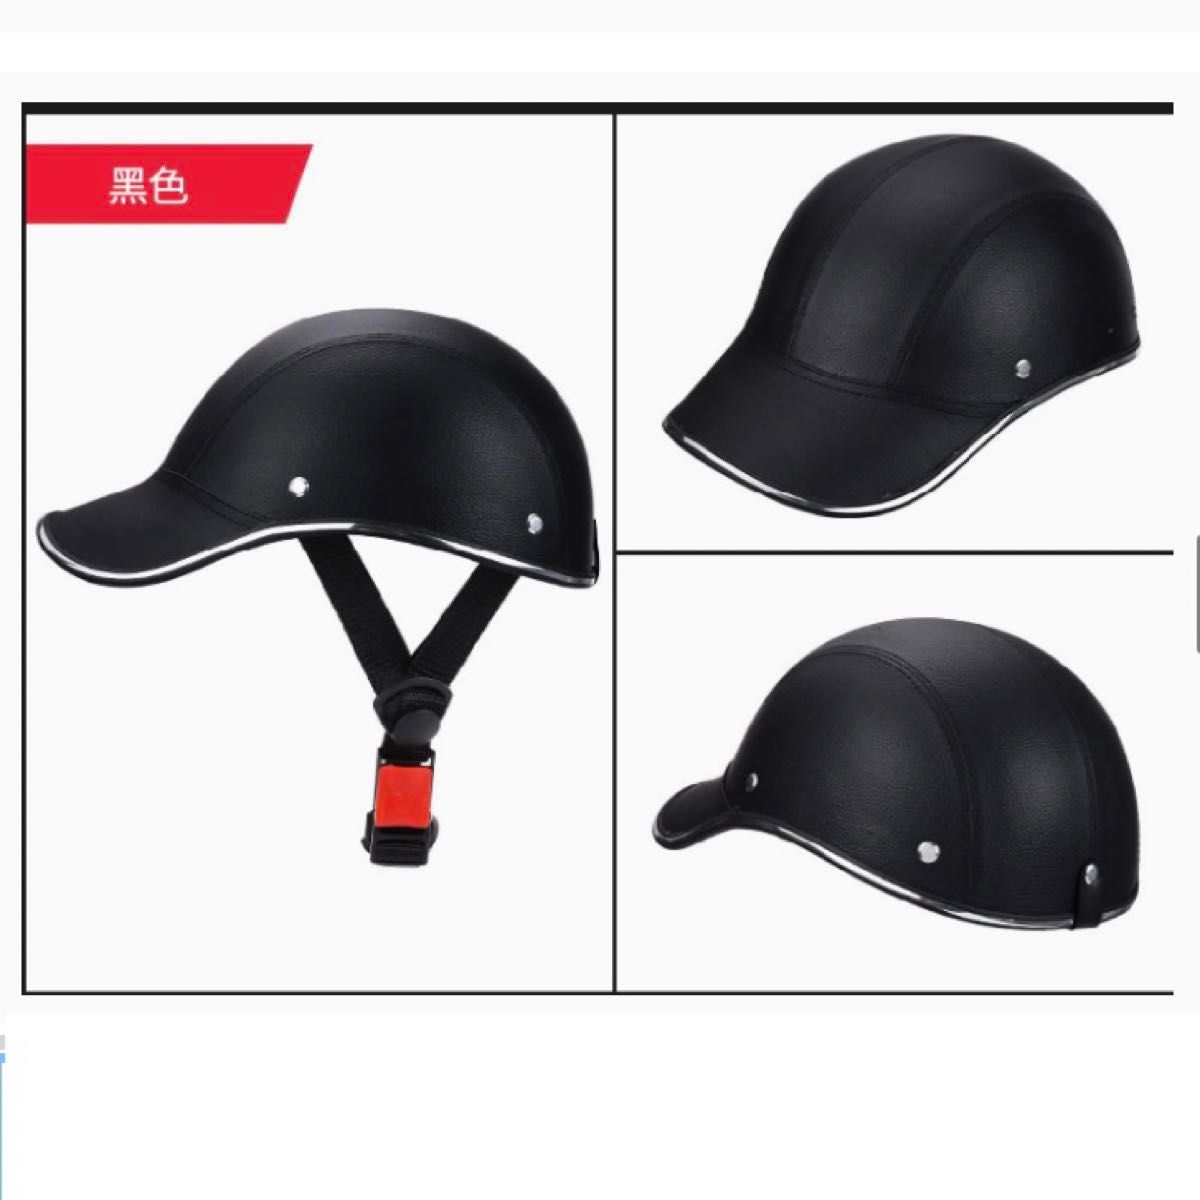 ヘルメット 大人 黒 自転車 通勤 通学 ロードバイク 超軽量 調節可能  おしゃれ サイクリング サイクルヘルメット 帽子型 黒